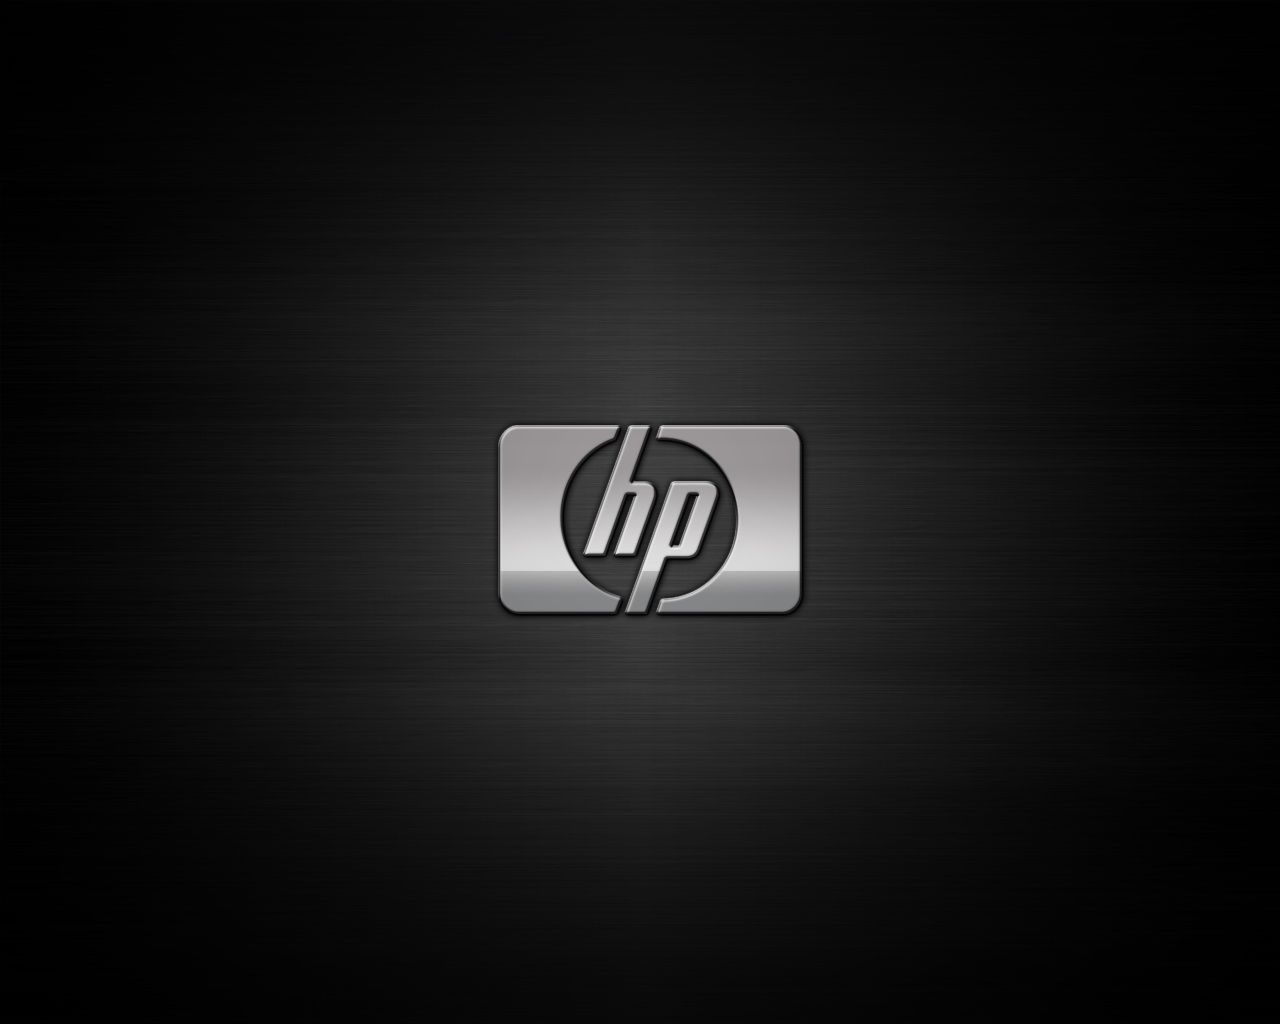 Hewlett Packard Wallpaper